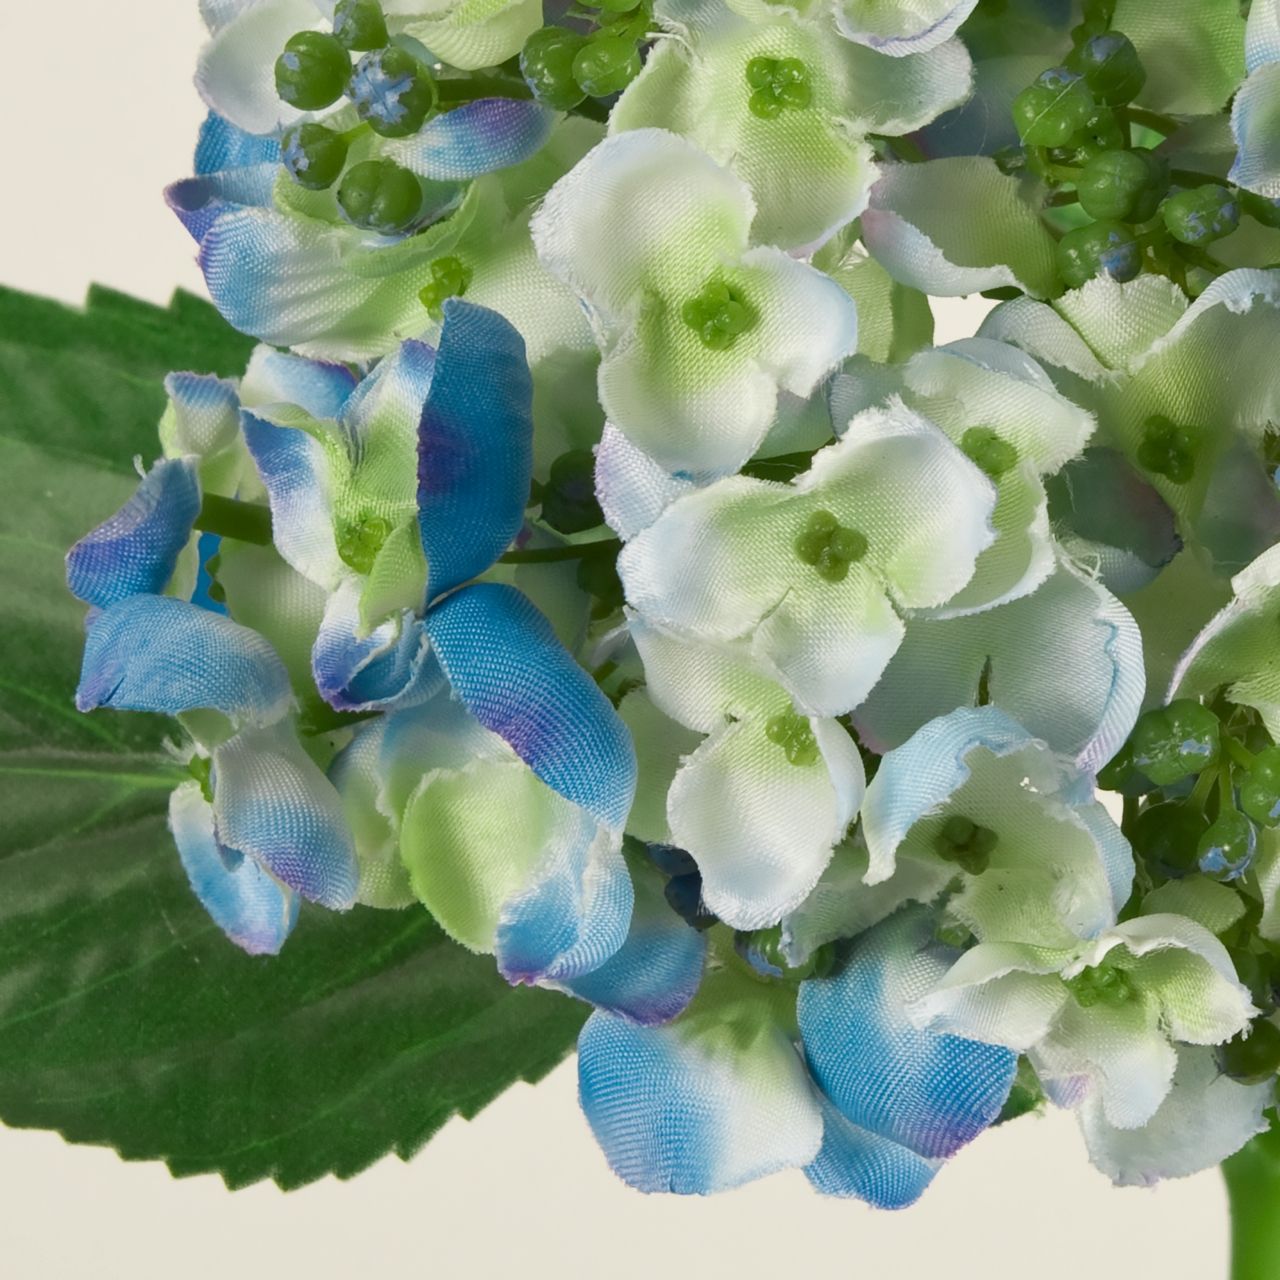 マイフラ 通販 Magiq おたふくあじさい ブルー アーティフィシャルフラワー 造花 Fm 005 あじさい ハイドレンジア ブルー Magiq アーティフィシャルフラワー 造花 全国にmagiq 花器 花資材などをお届けします